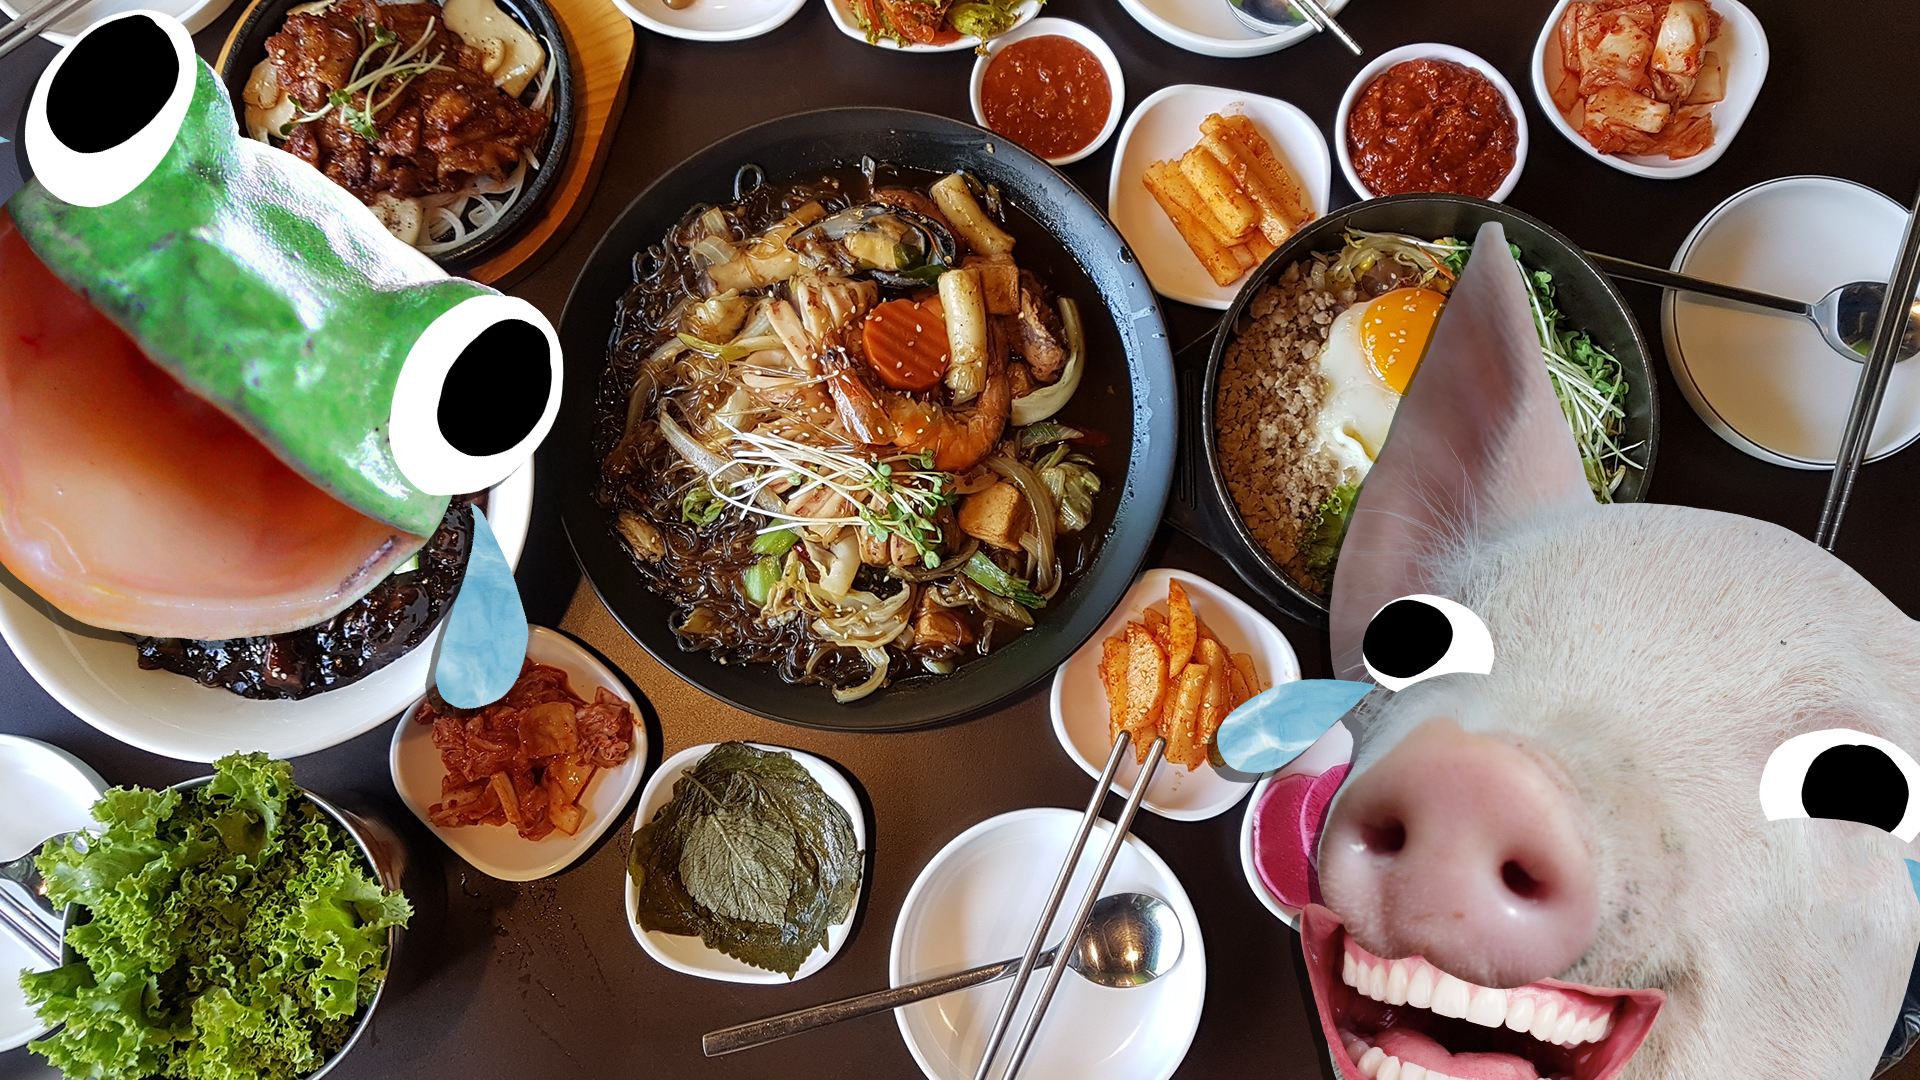 A delicious Korean dinner